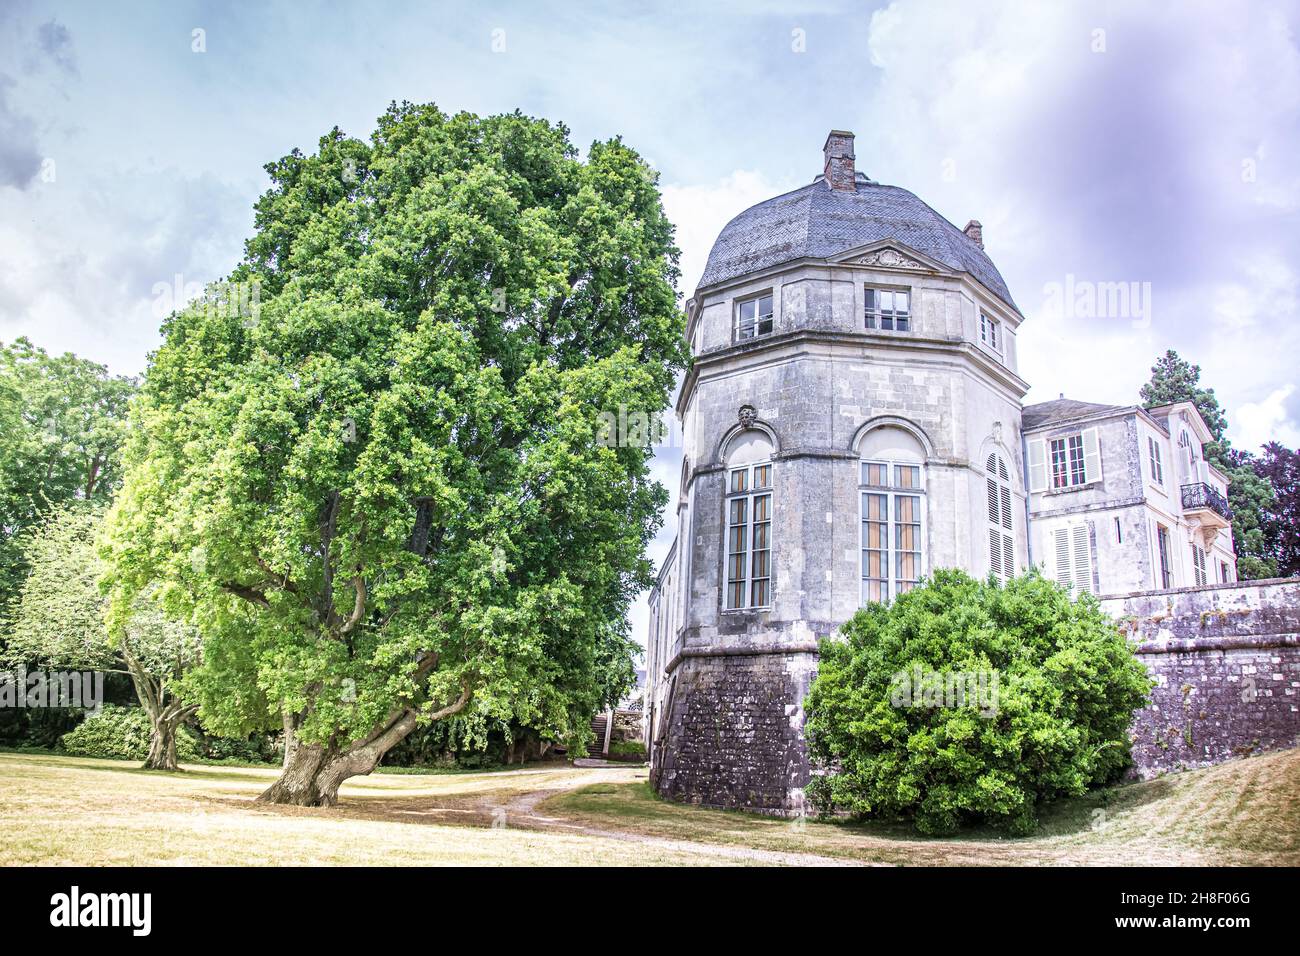 The historic Castle of Châteauneuf-sur-Loire, Département Loiret, France, 06-21-2015 Stock Photo